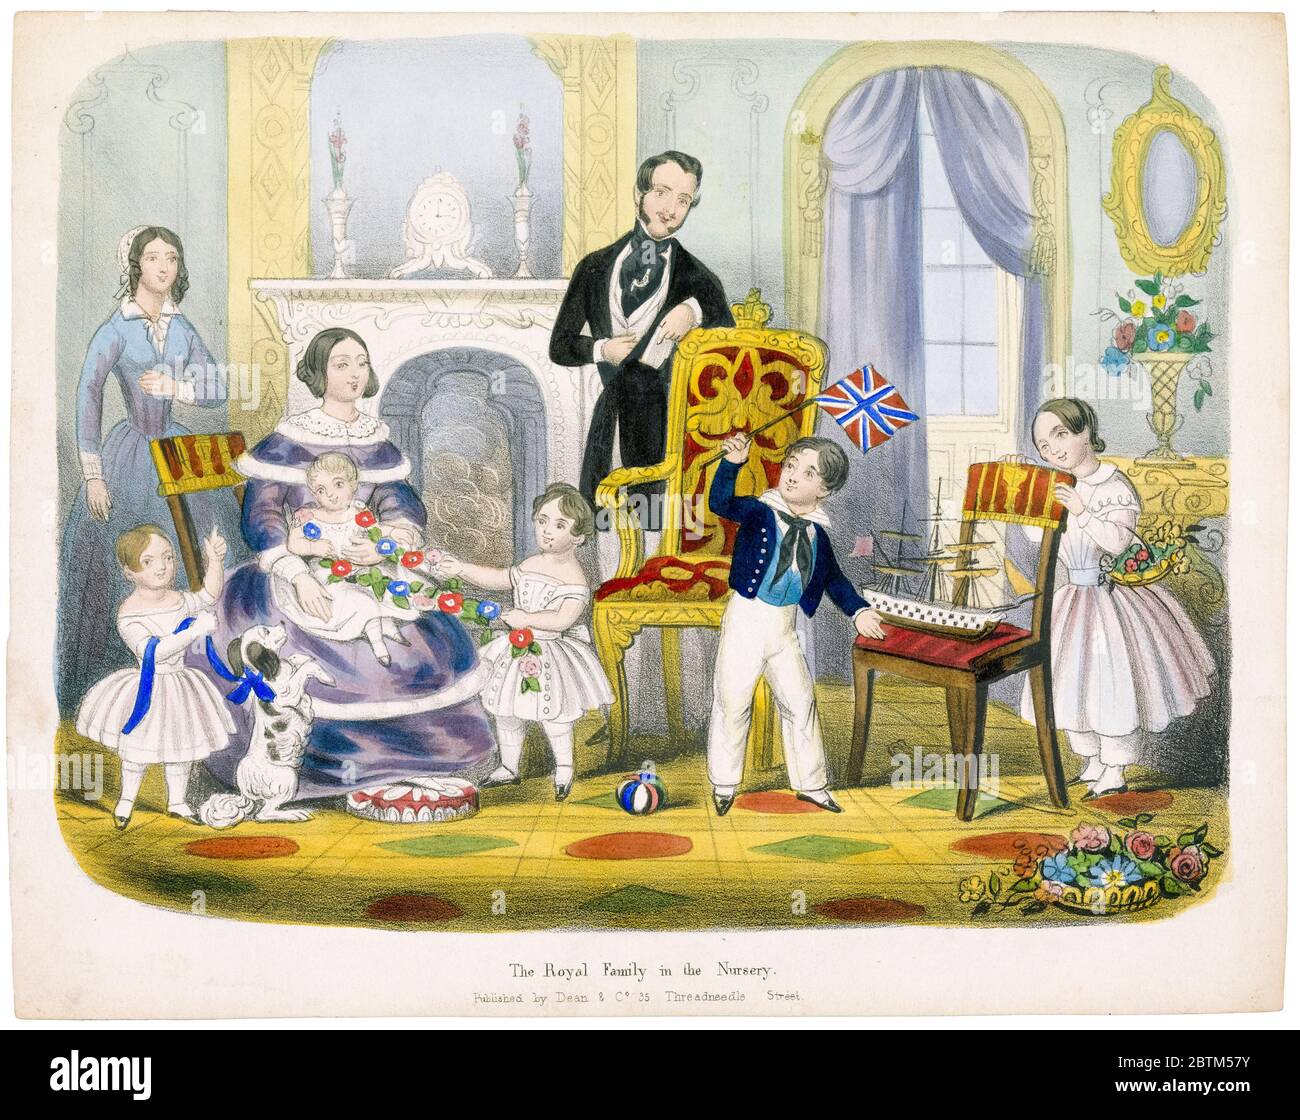 Königliche Familie im Kinderzimmer: Königin Victoria, Prinz Albert und ihre Kinder, gedruckt von Dean & Co, um 1845 Stockfoto